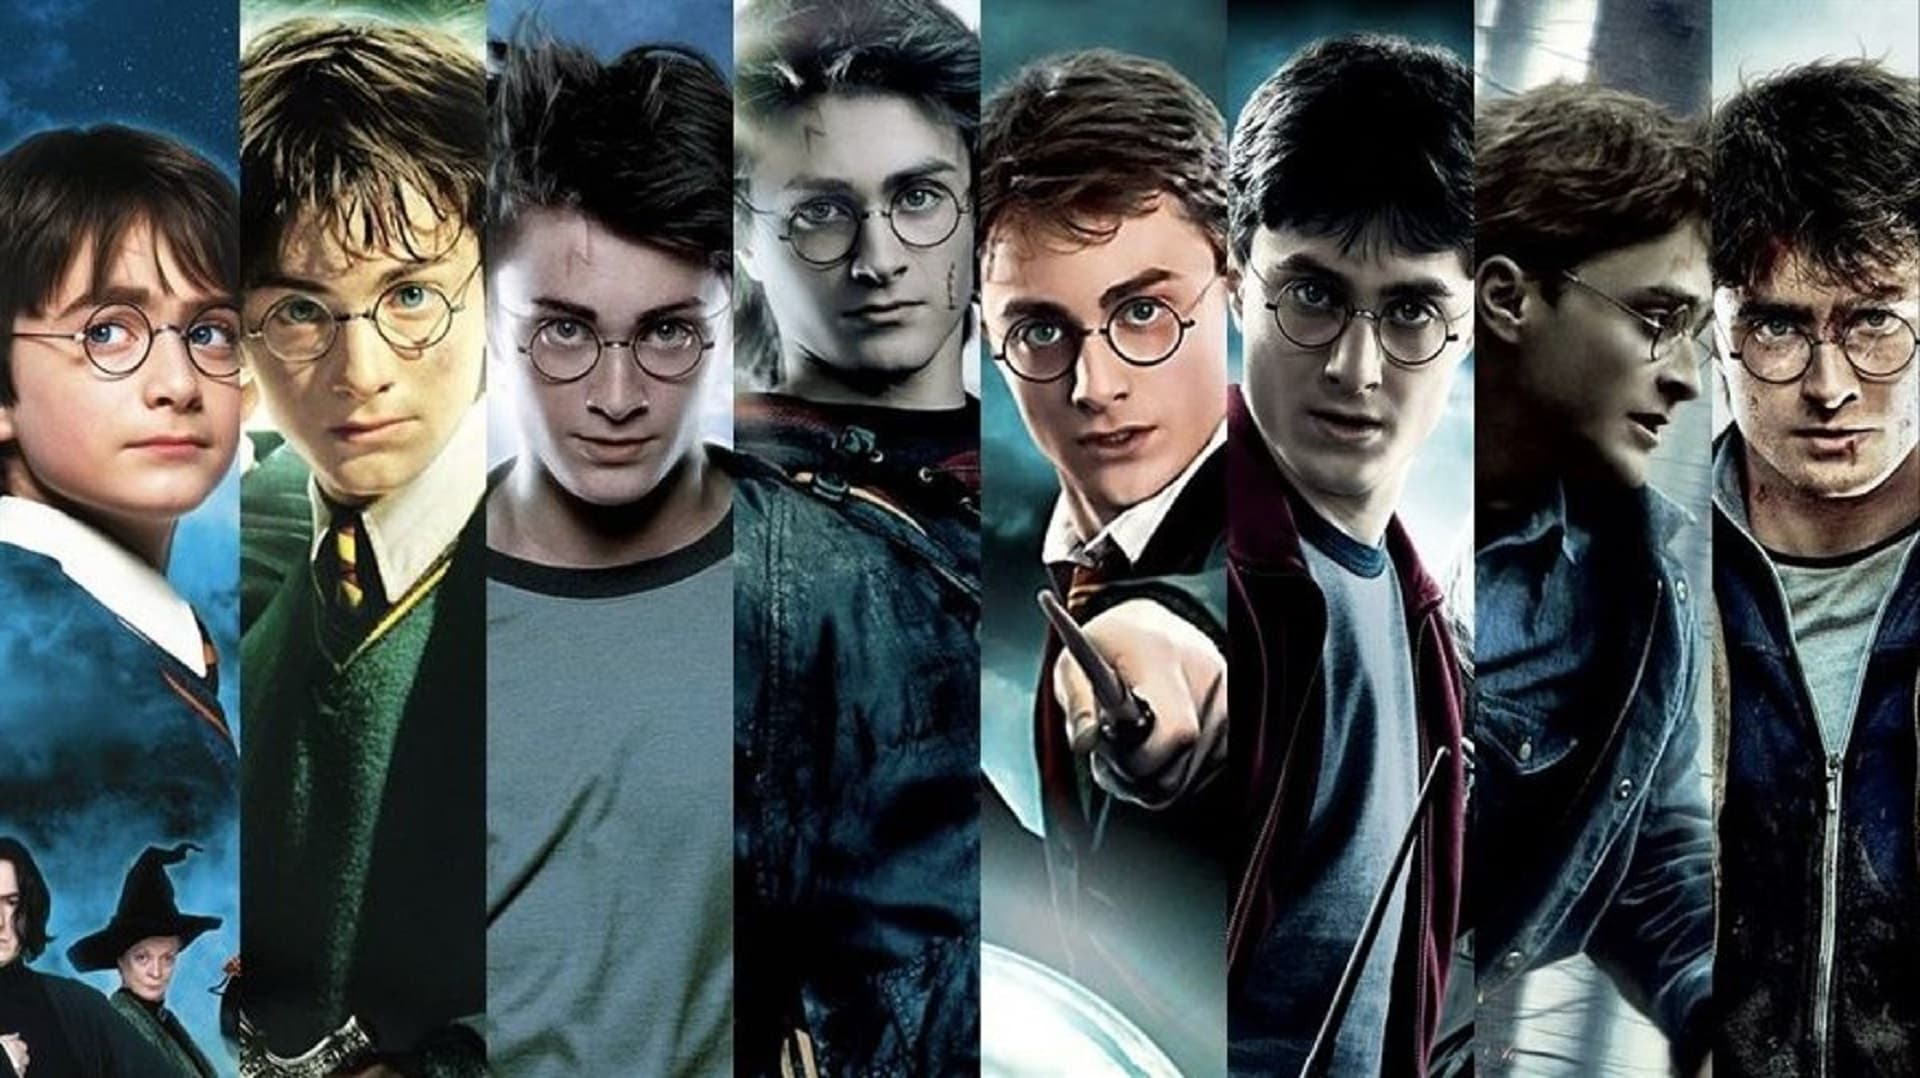 Las mejores películas de Harry Potter y Animales Fantásticos para ver